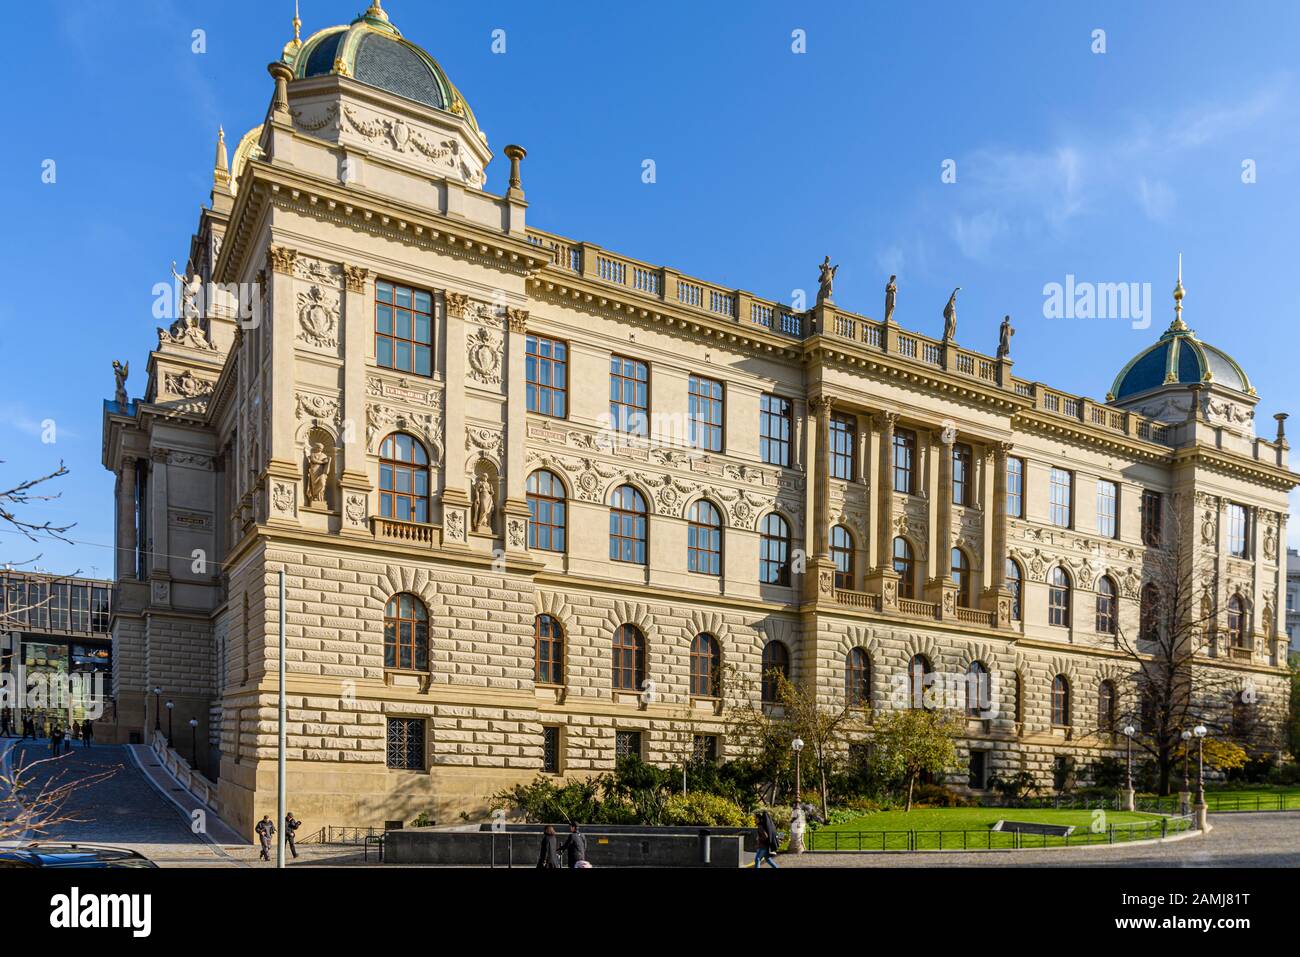 Národní muzeum, Prague, Czech Republic Stock Photo